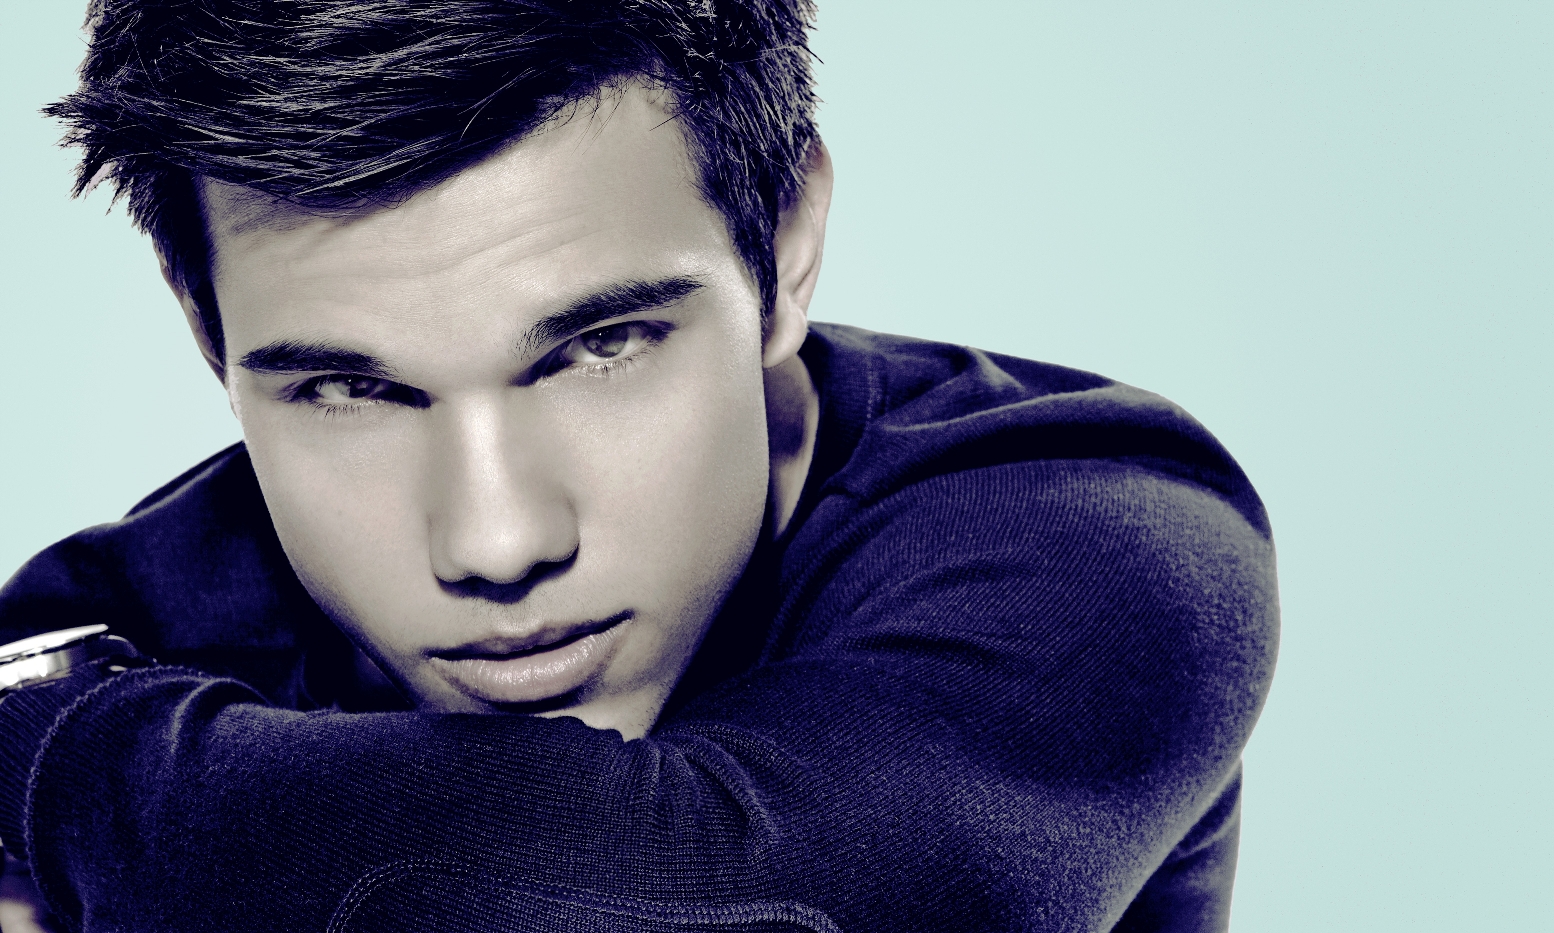 Image Taylor Lautner Headshot Twilight Celeb Hot